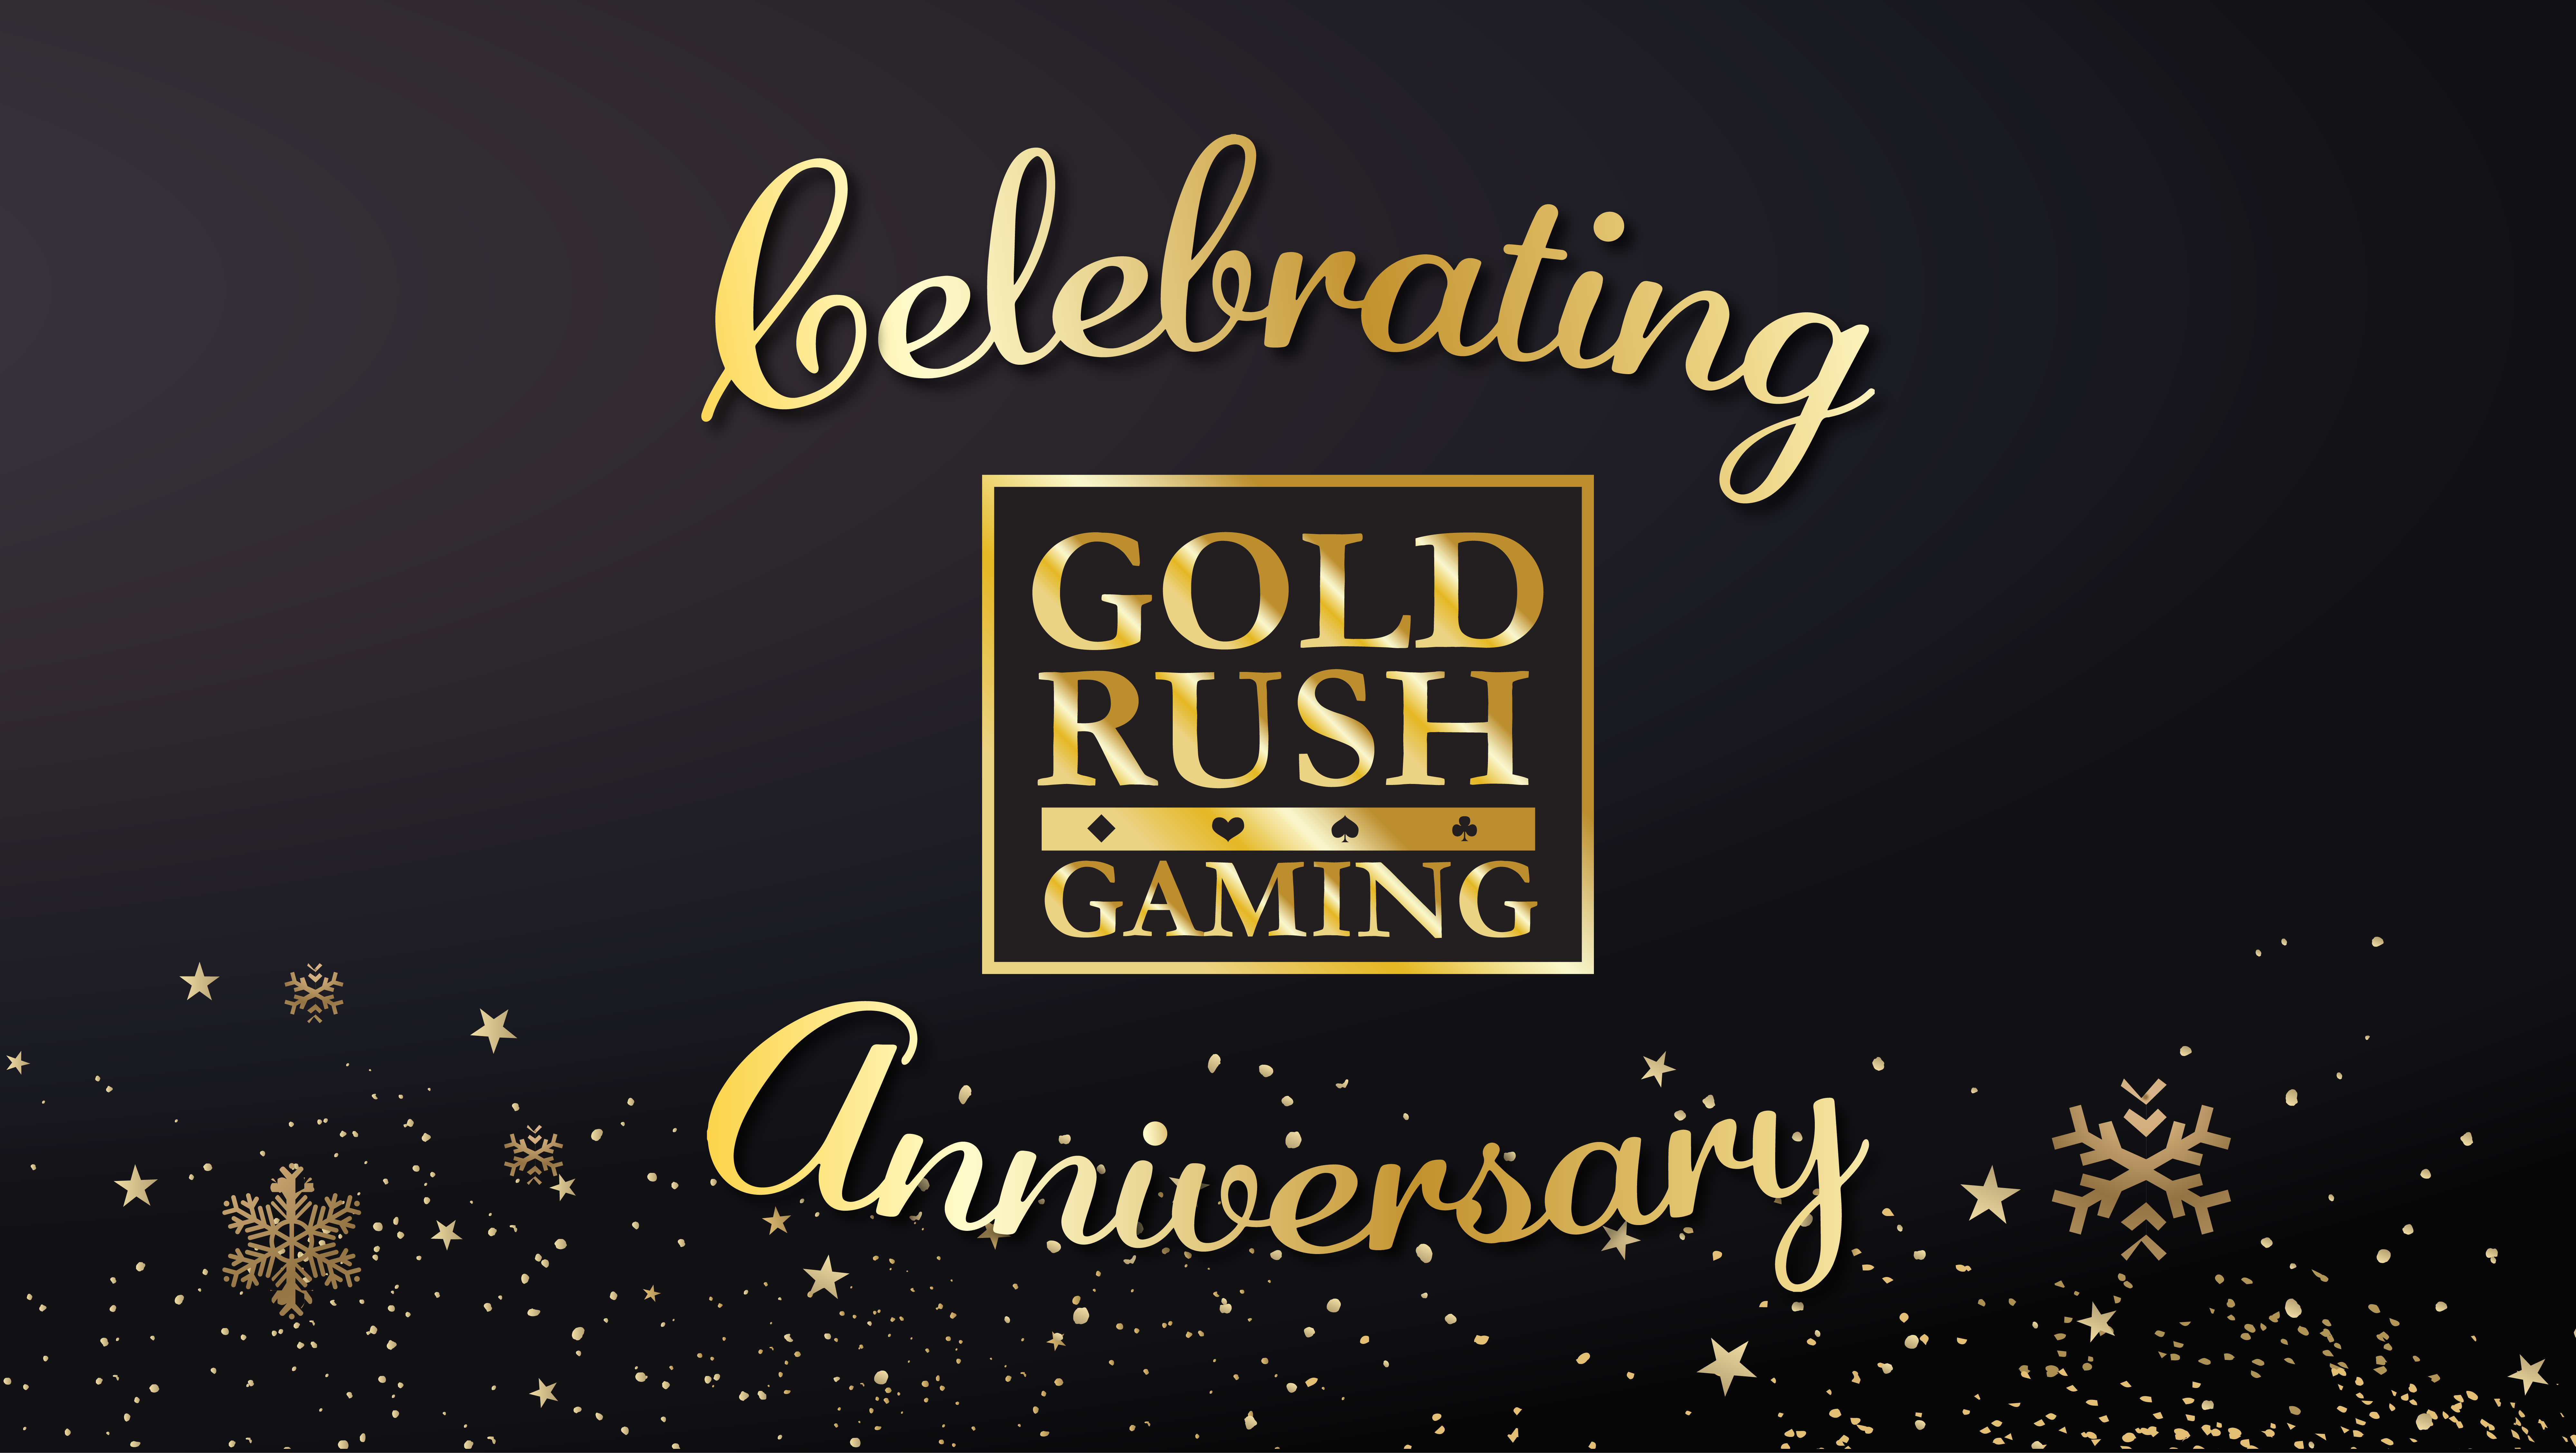 Gold Rush Gaming - Play Slots